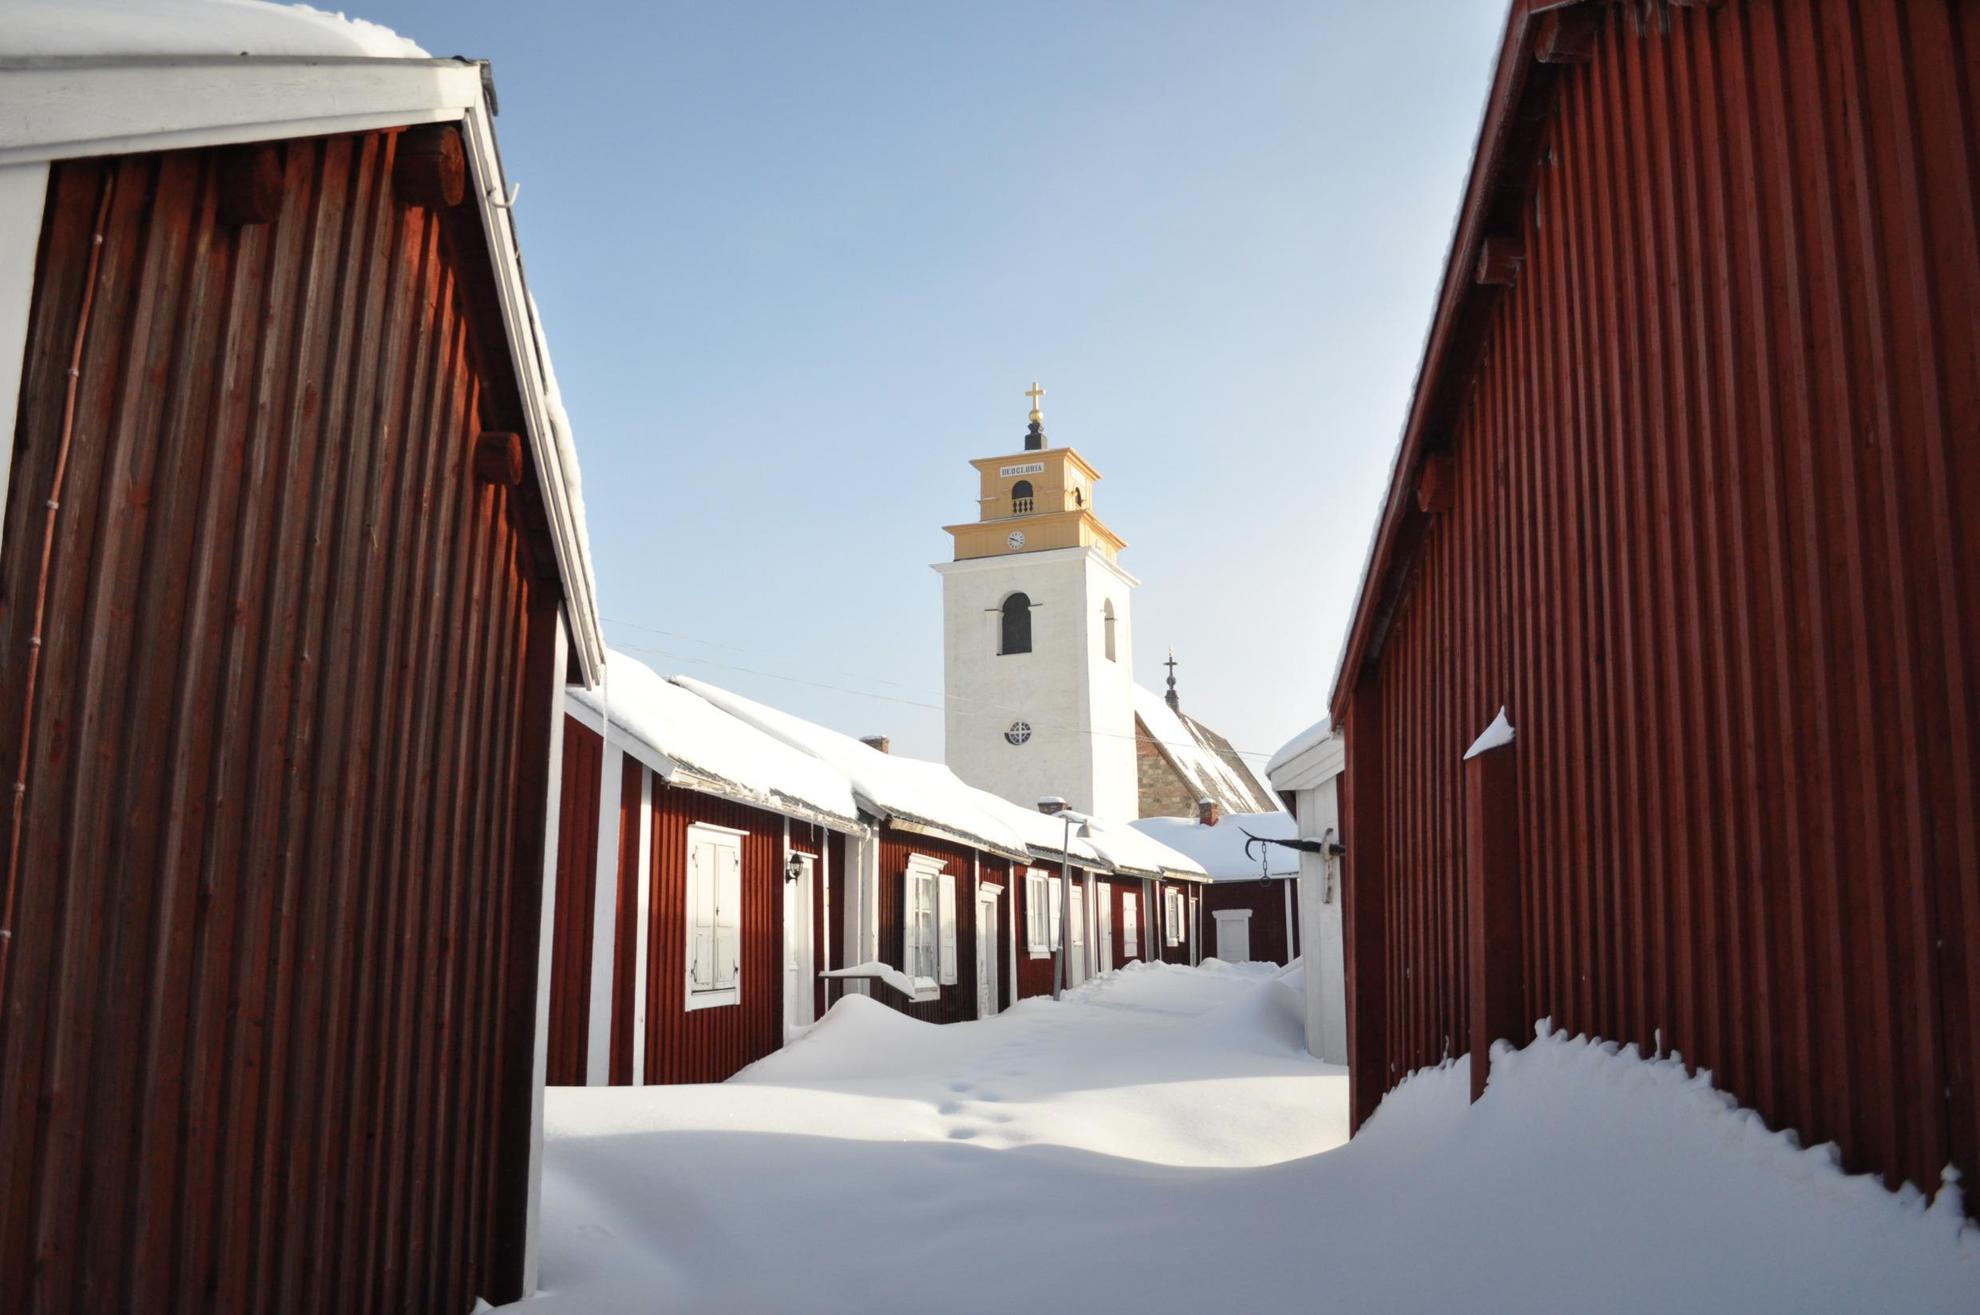 Verschillende kleine houten huisjes leiden naar een witte stenen kerk. Sneeuw op de grond en huizen.